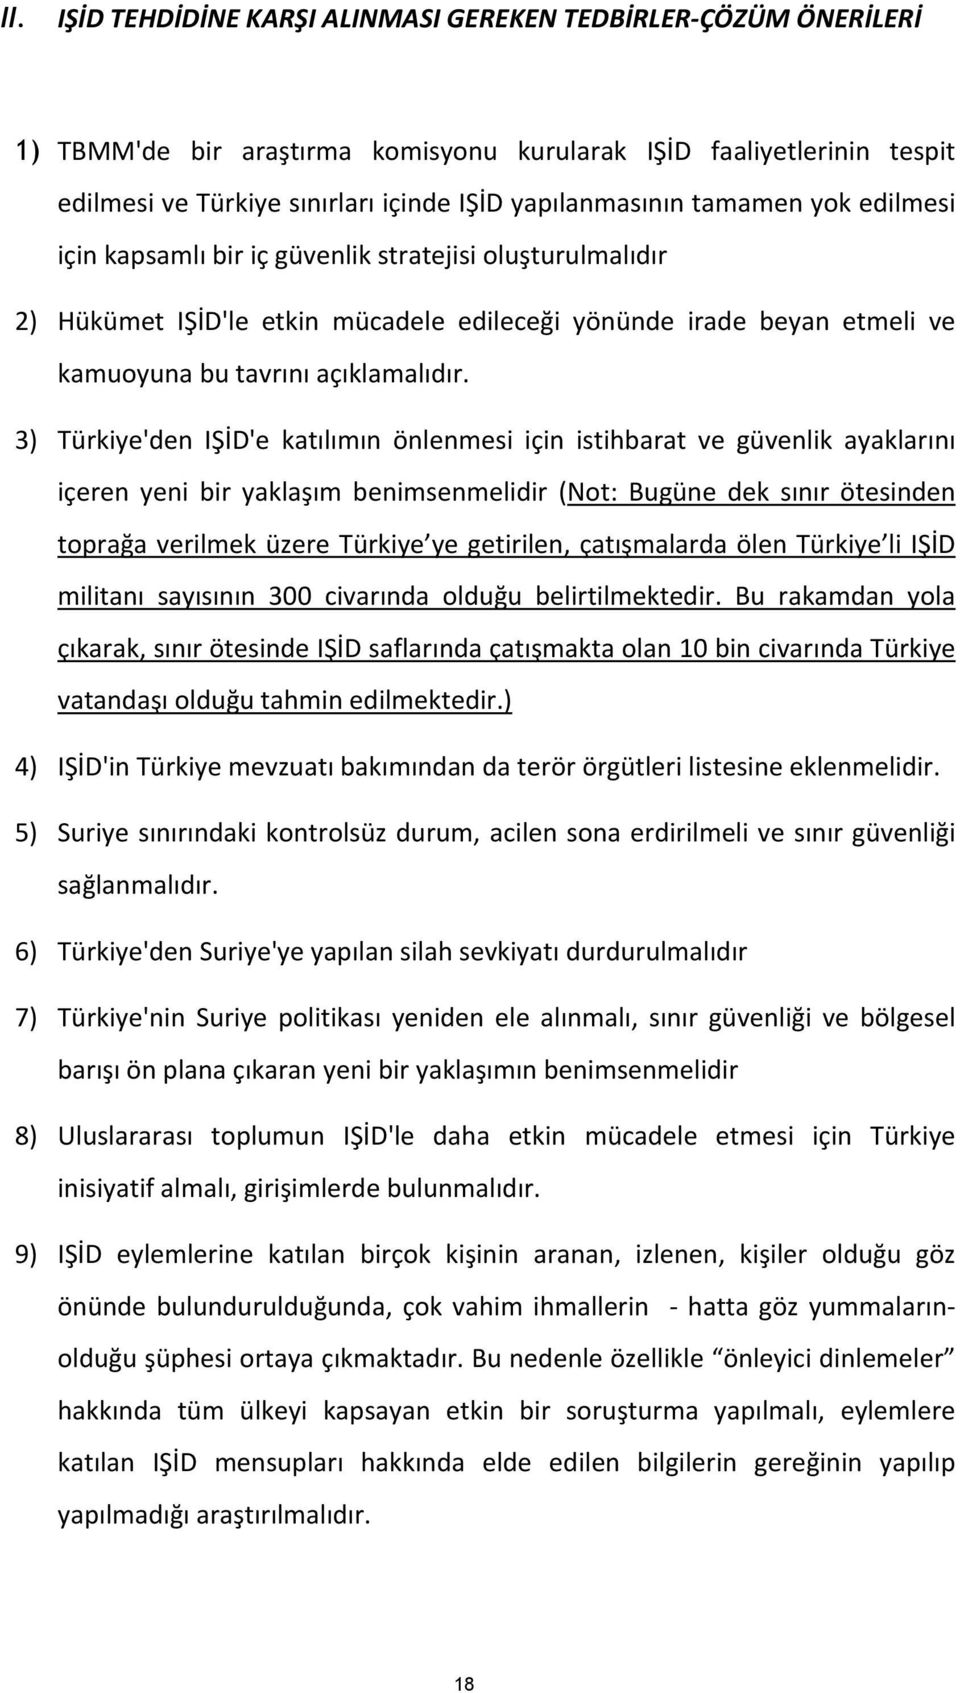 3) Türkiye'den IŞİD'e katılımın önlenmesi için istihbarat ve güvenlik ayaklarını içeren yeni bir yaklaşım benimsenmelidir (Not: Bugüne dek sınır ötesinden toprağa verilmek üzere Türkiye ye getirilen,